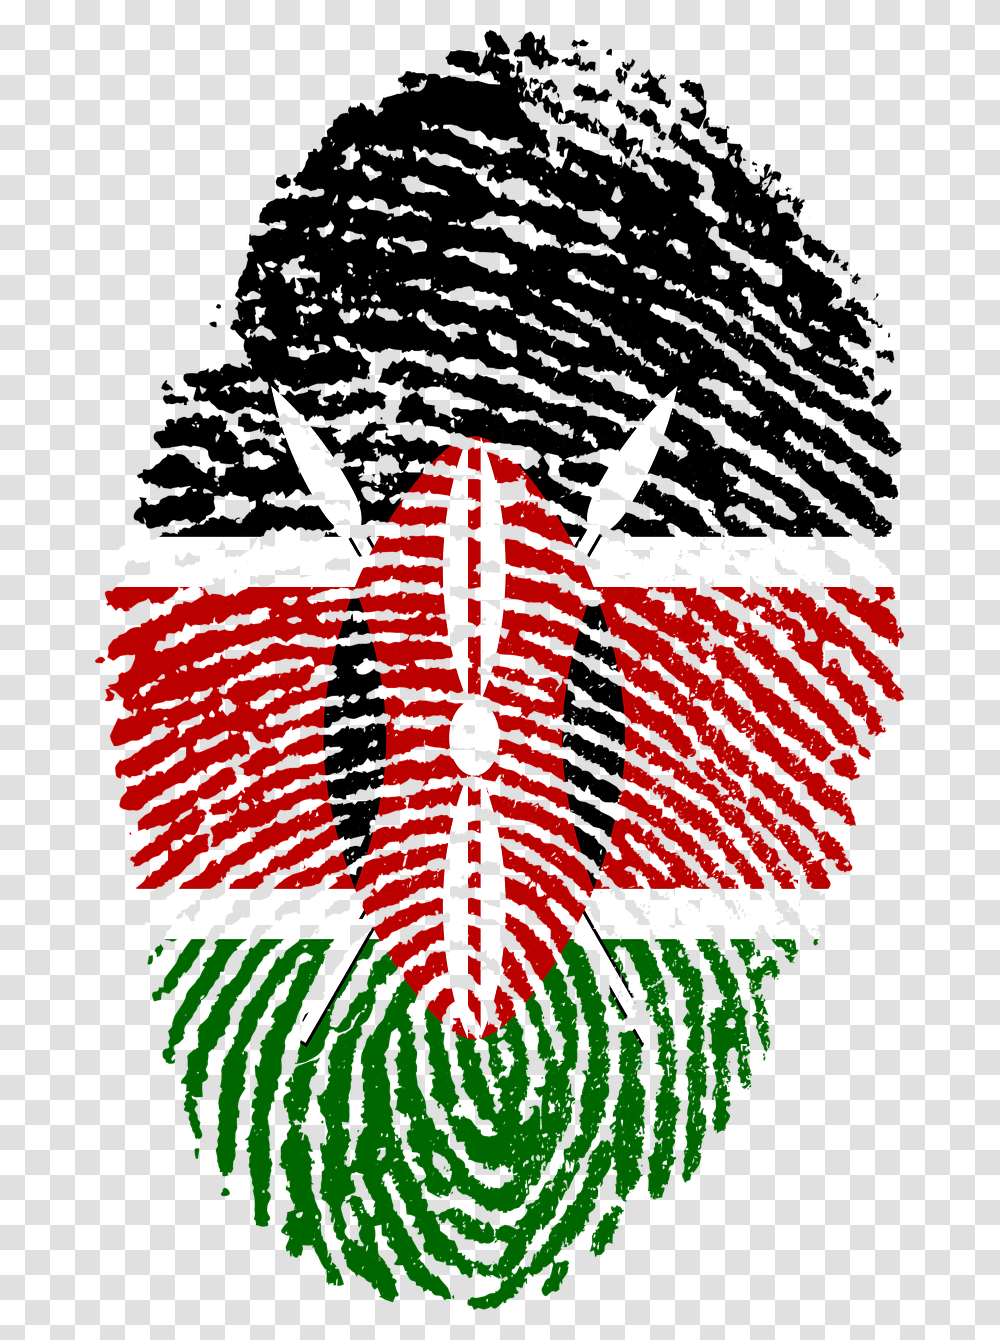 Kenya Flag Fingerprint Free Photo Kenyan Flag, Ornament, Pattern Transparent Png